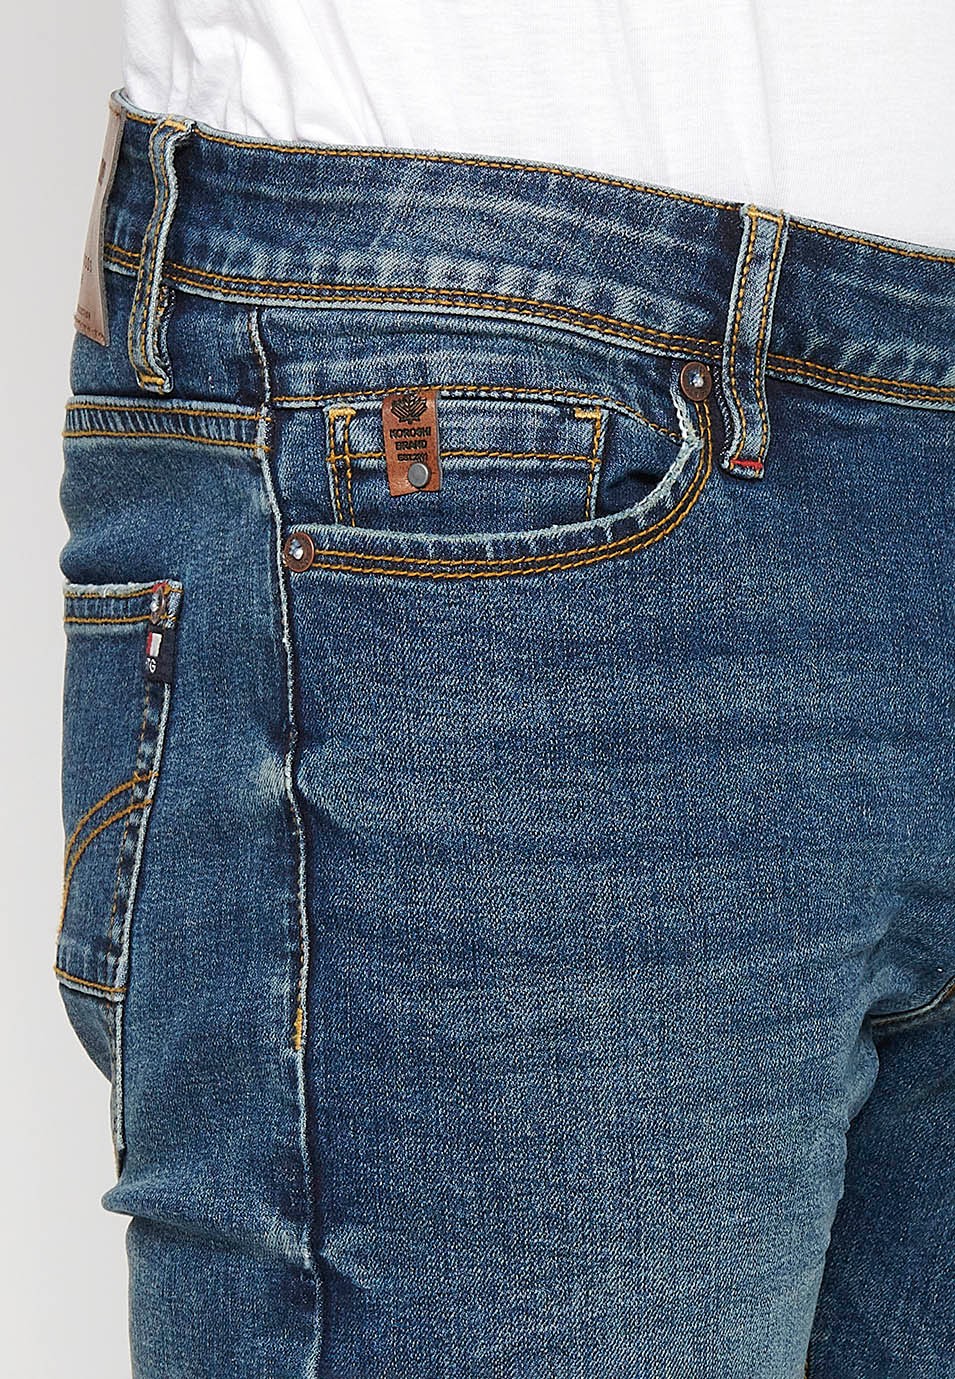 Pantalons llargs denim straigth regular fit amb Tancament davanter amb cremallera i botó i Cinc butxaques, un ceriller de Color Blau per a Home 9